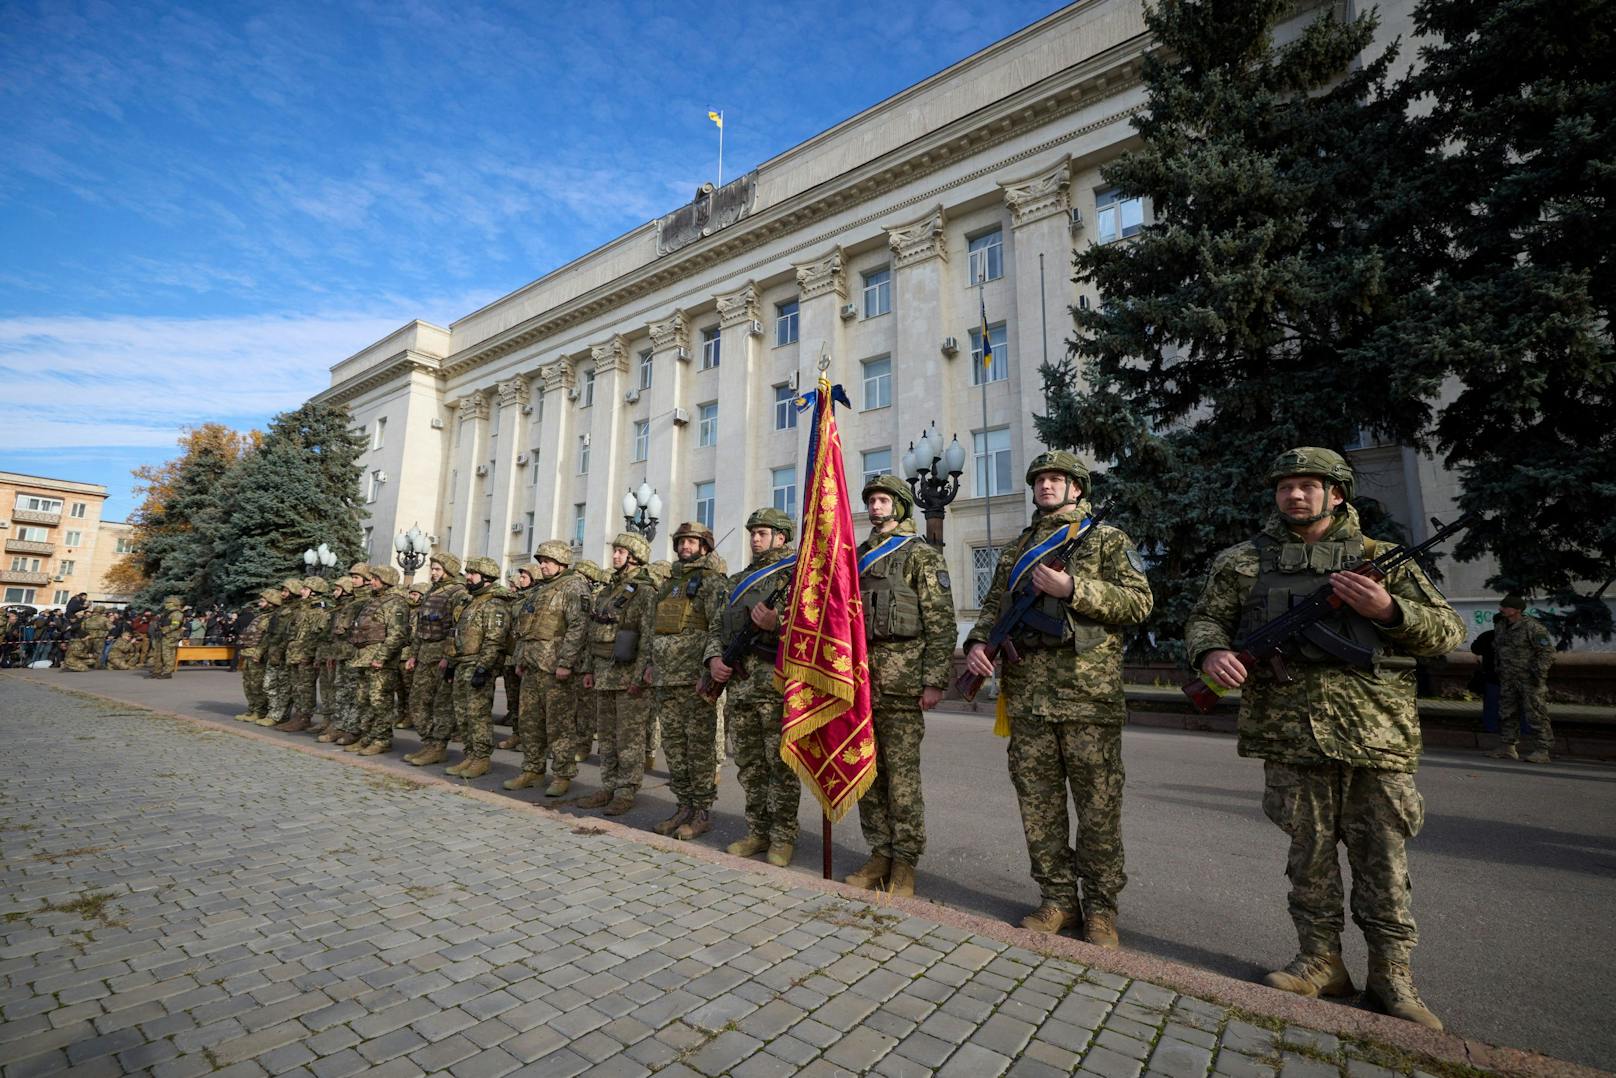 Zwei Tage später rückte die ukrainische Armee nach und nahm die Stadt wieder in Besitz.